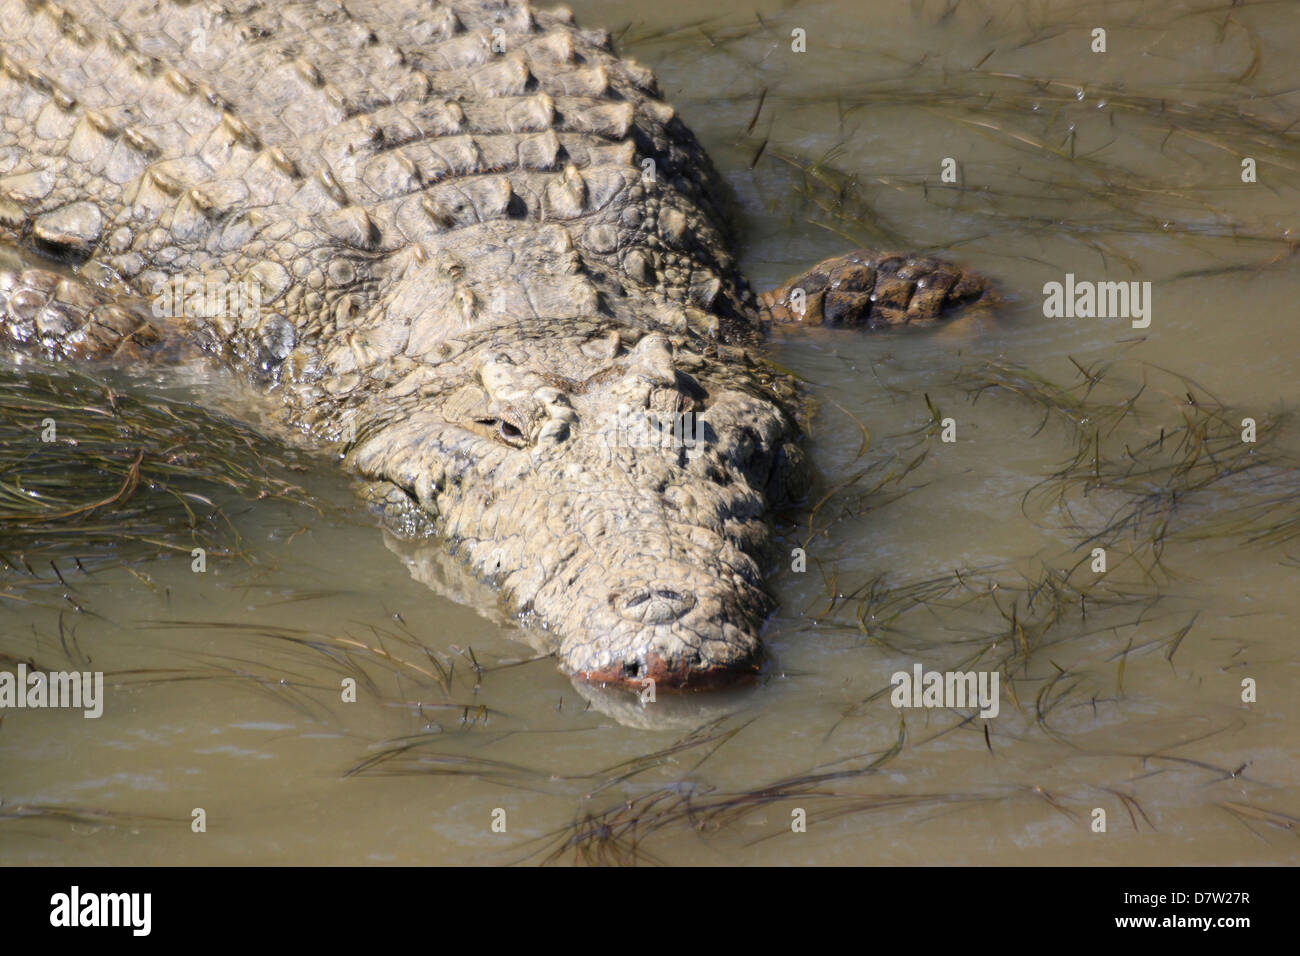 Un crocodile, Sainte-Lucie, zones humides Kwa-Zulu Natal, Afrique du Sud Banque D'Images